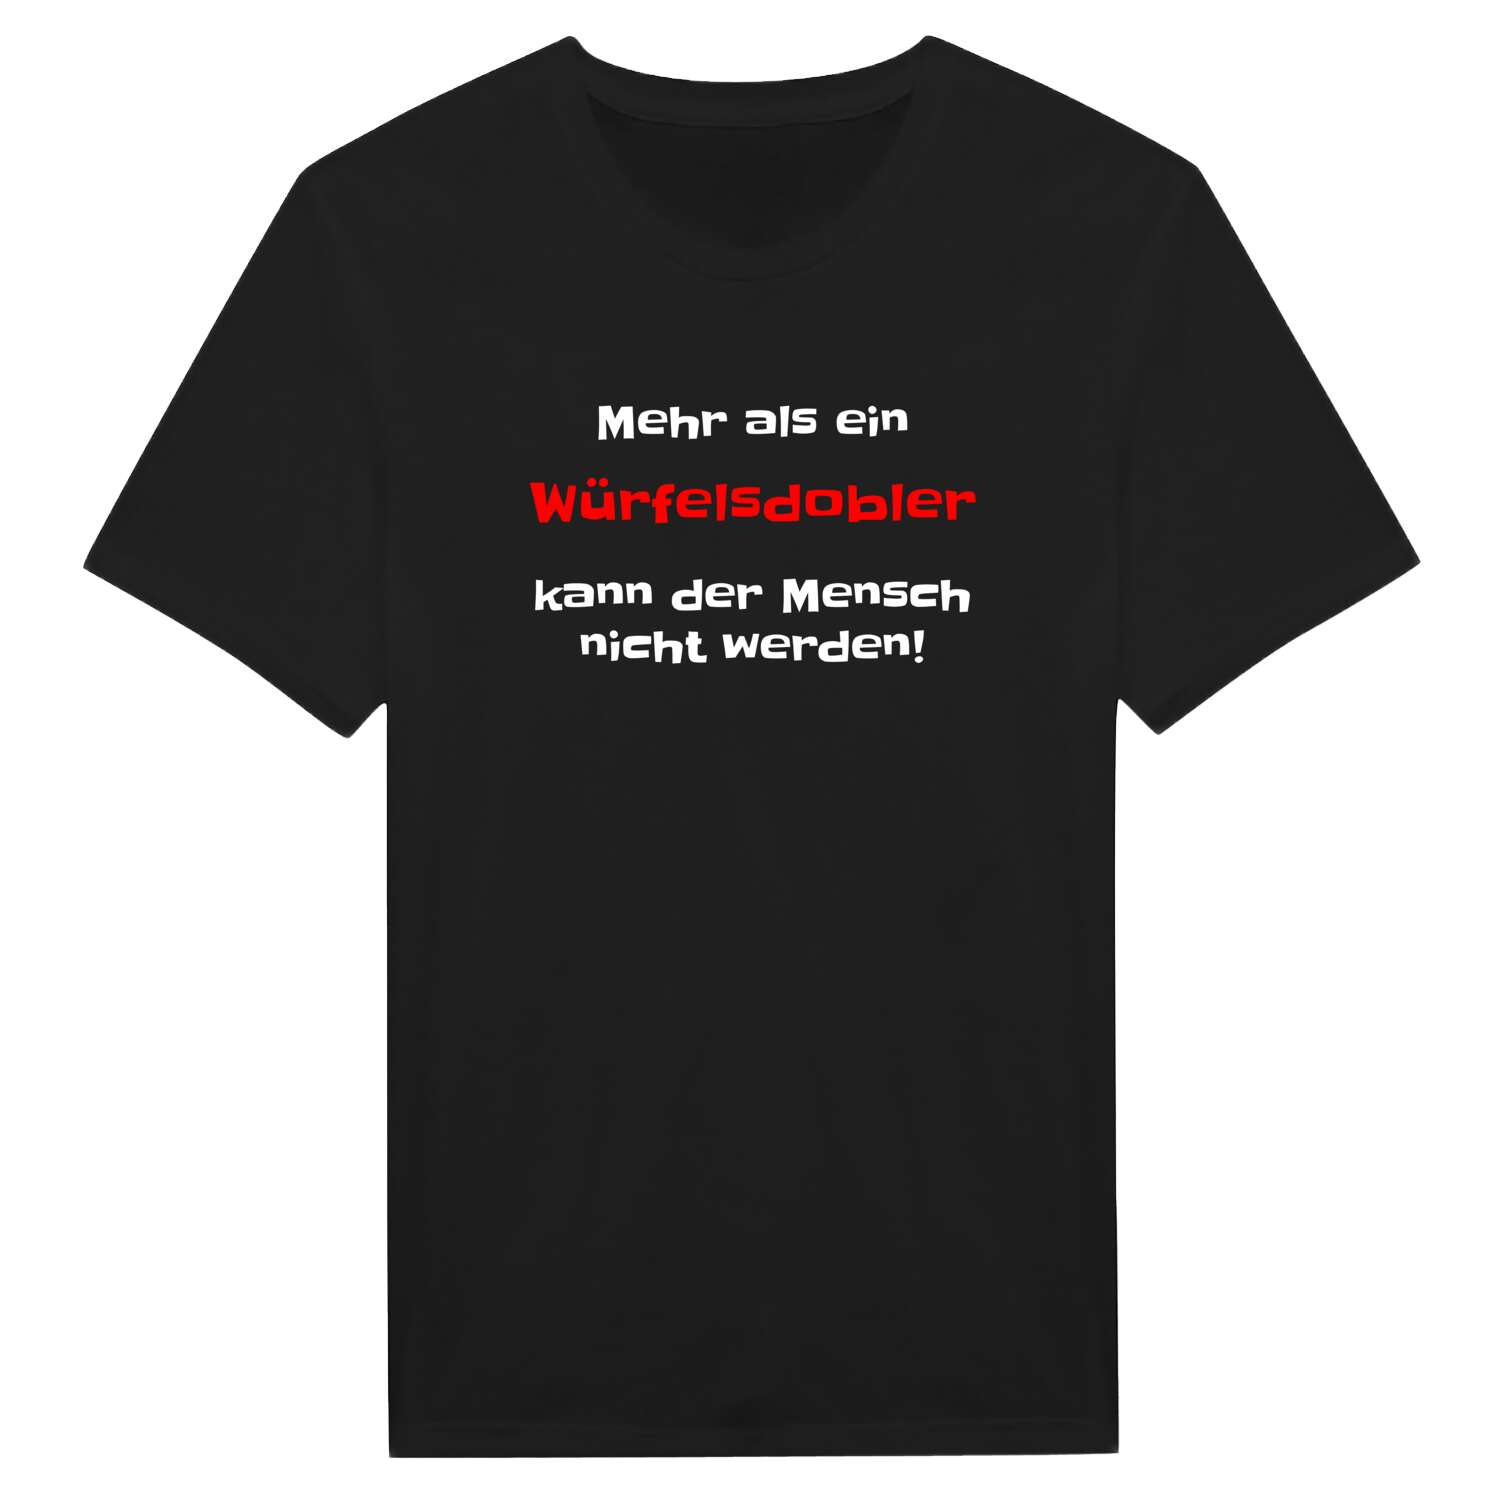 Würfelsdobl T-Shirt »Mehr als ein«